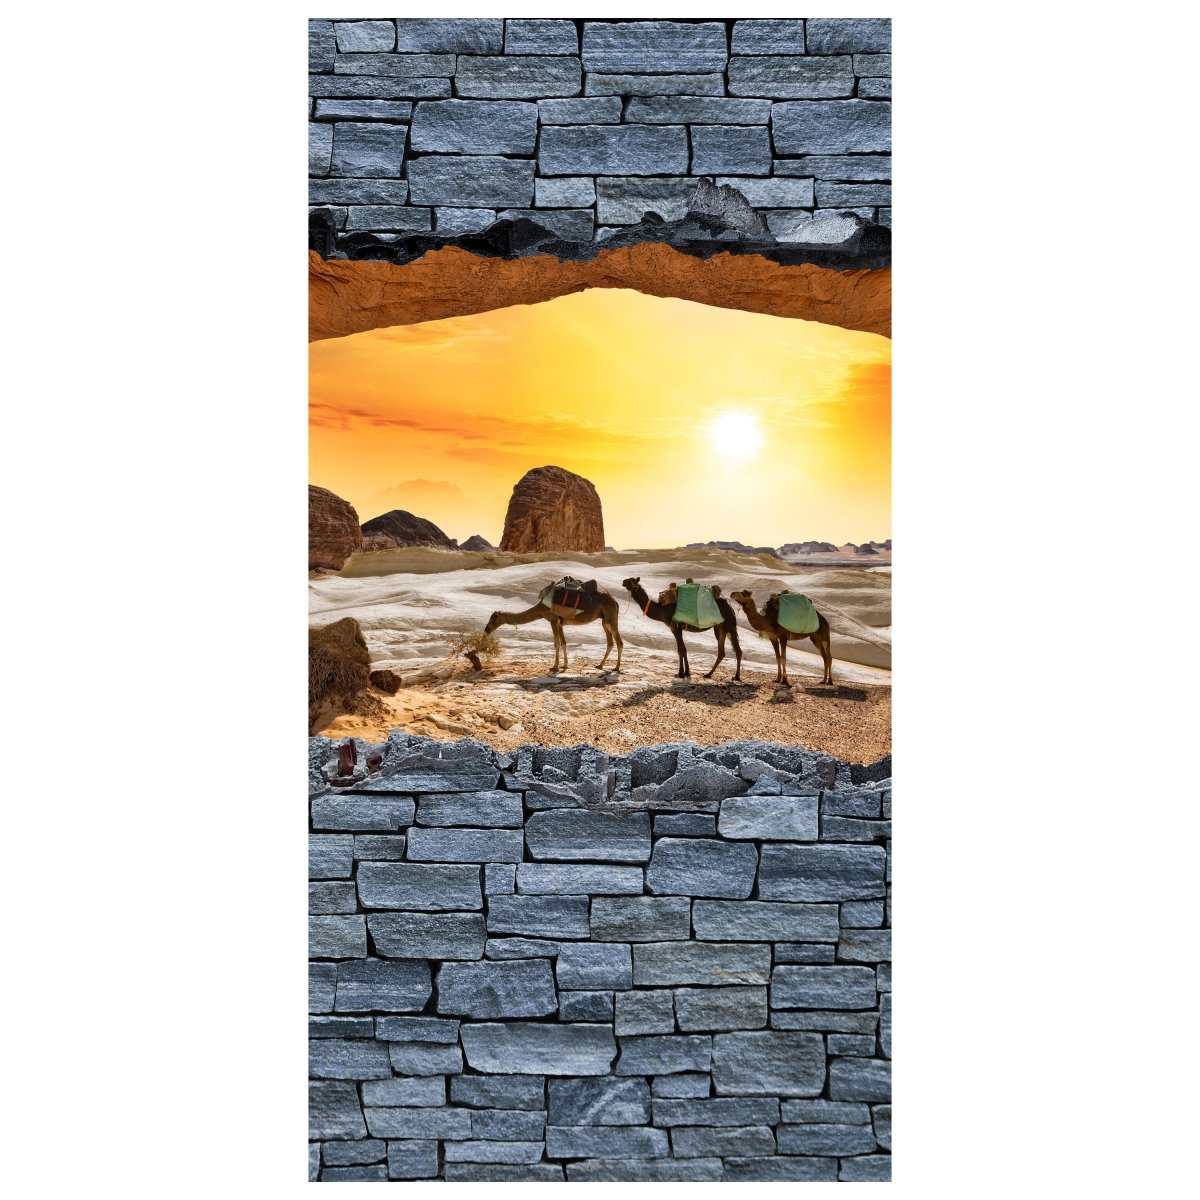 Türtapete 3D Kamele in der Wüste- grobe Steinmauer M0643 - Bild 2